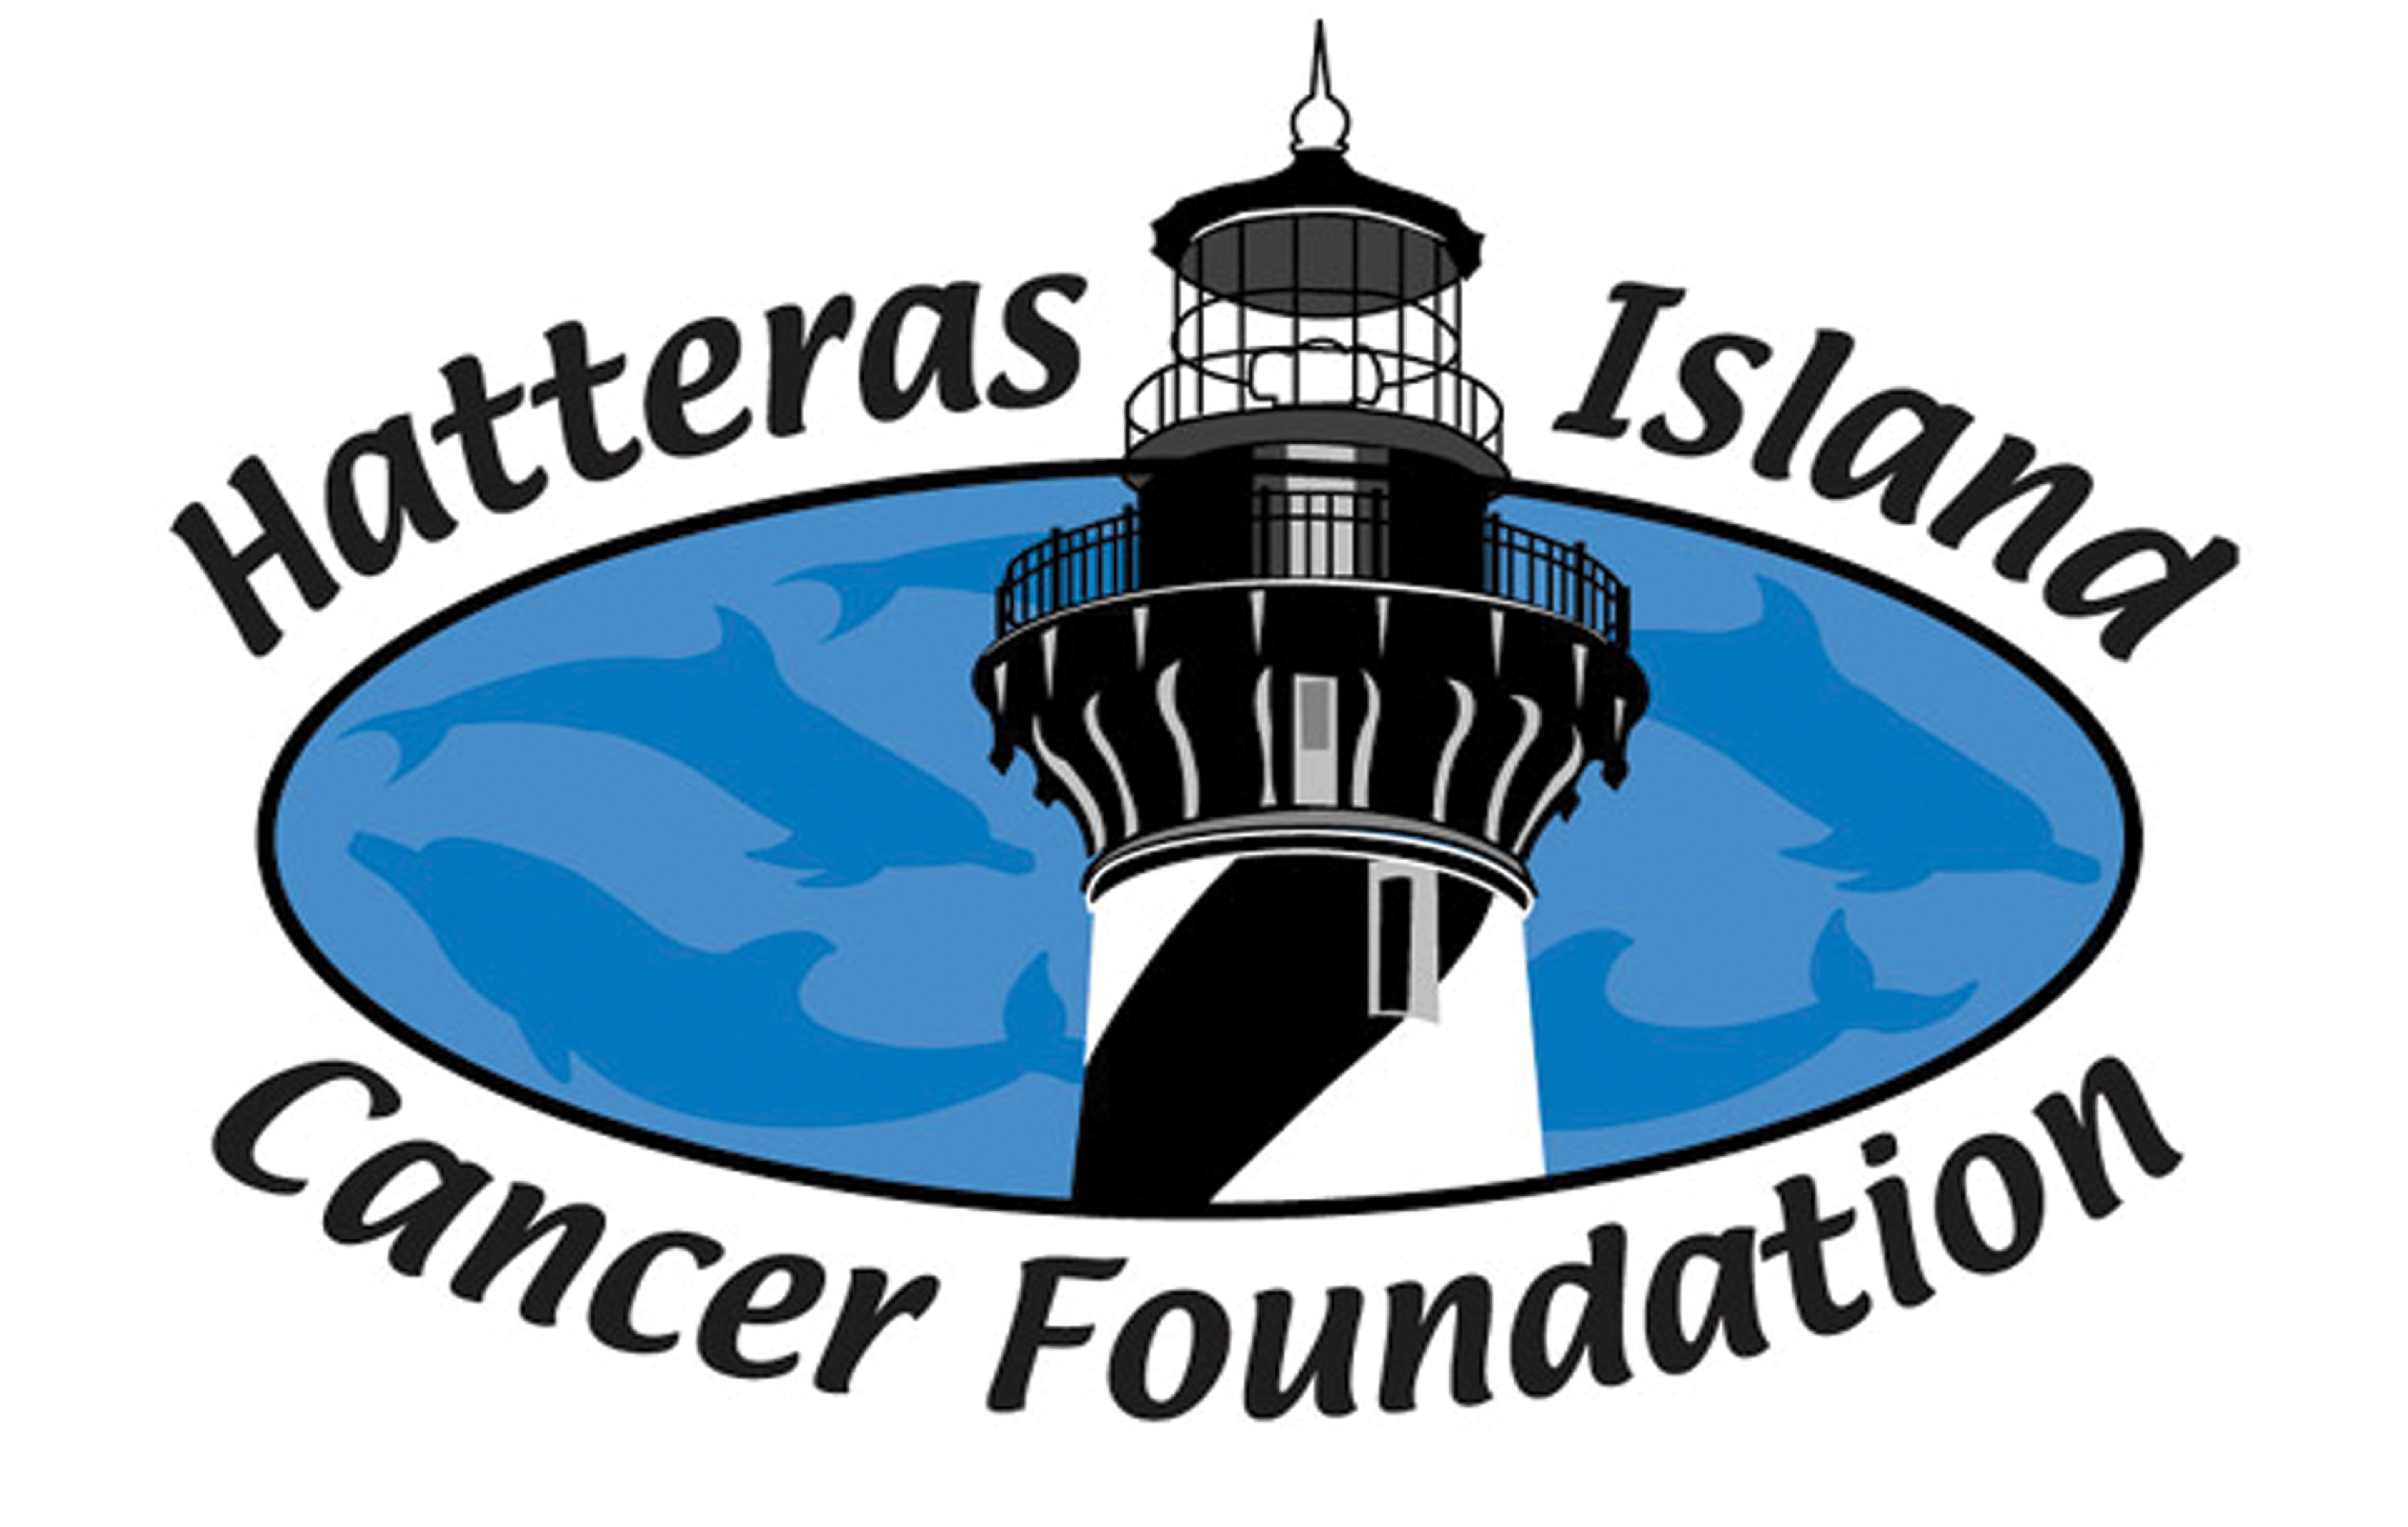 hatteras island cancer foundation